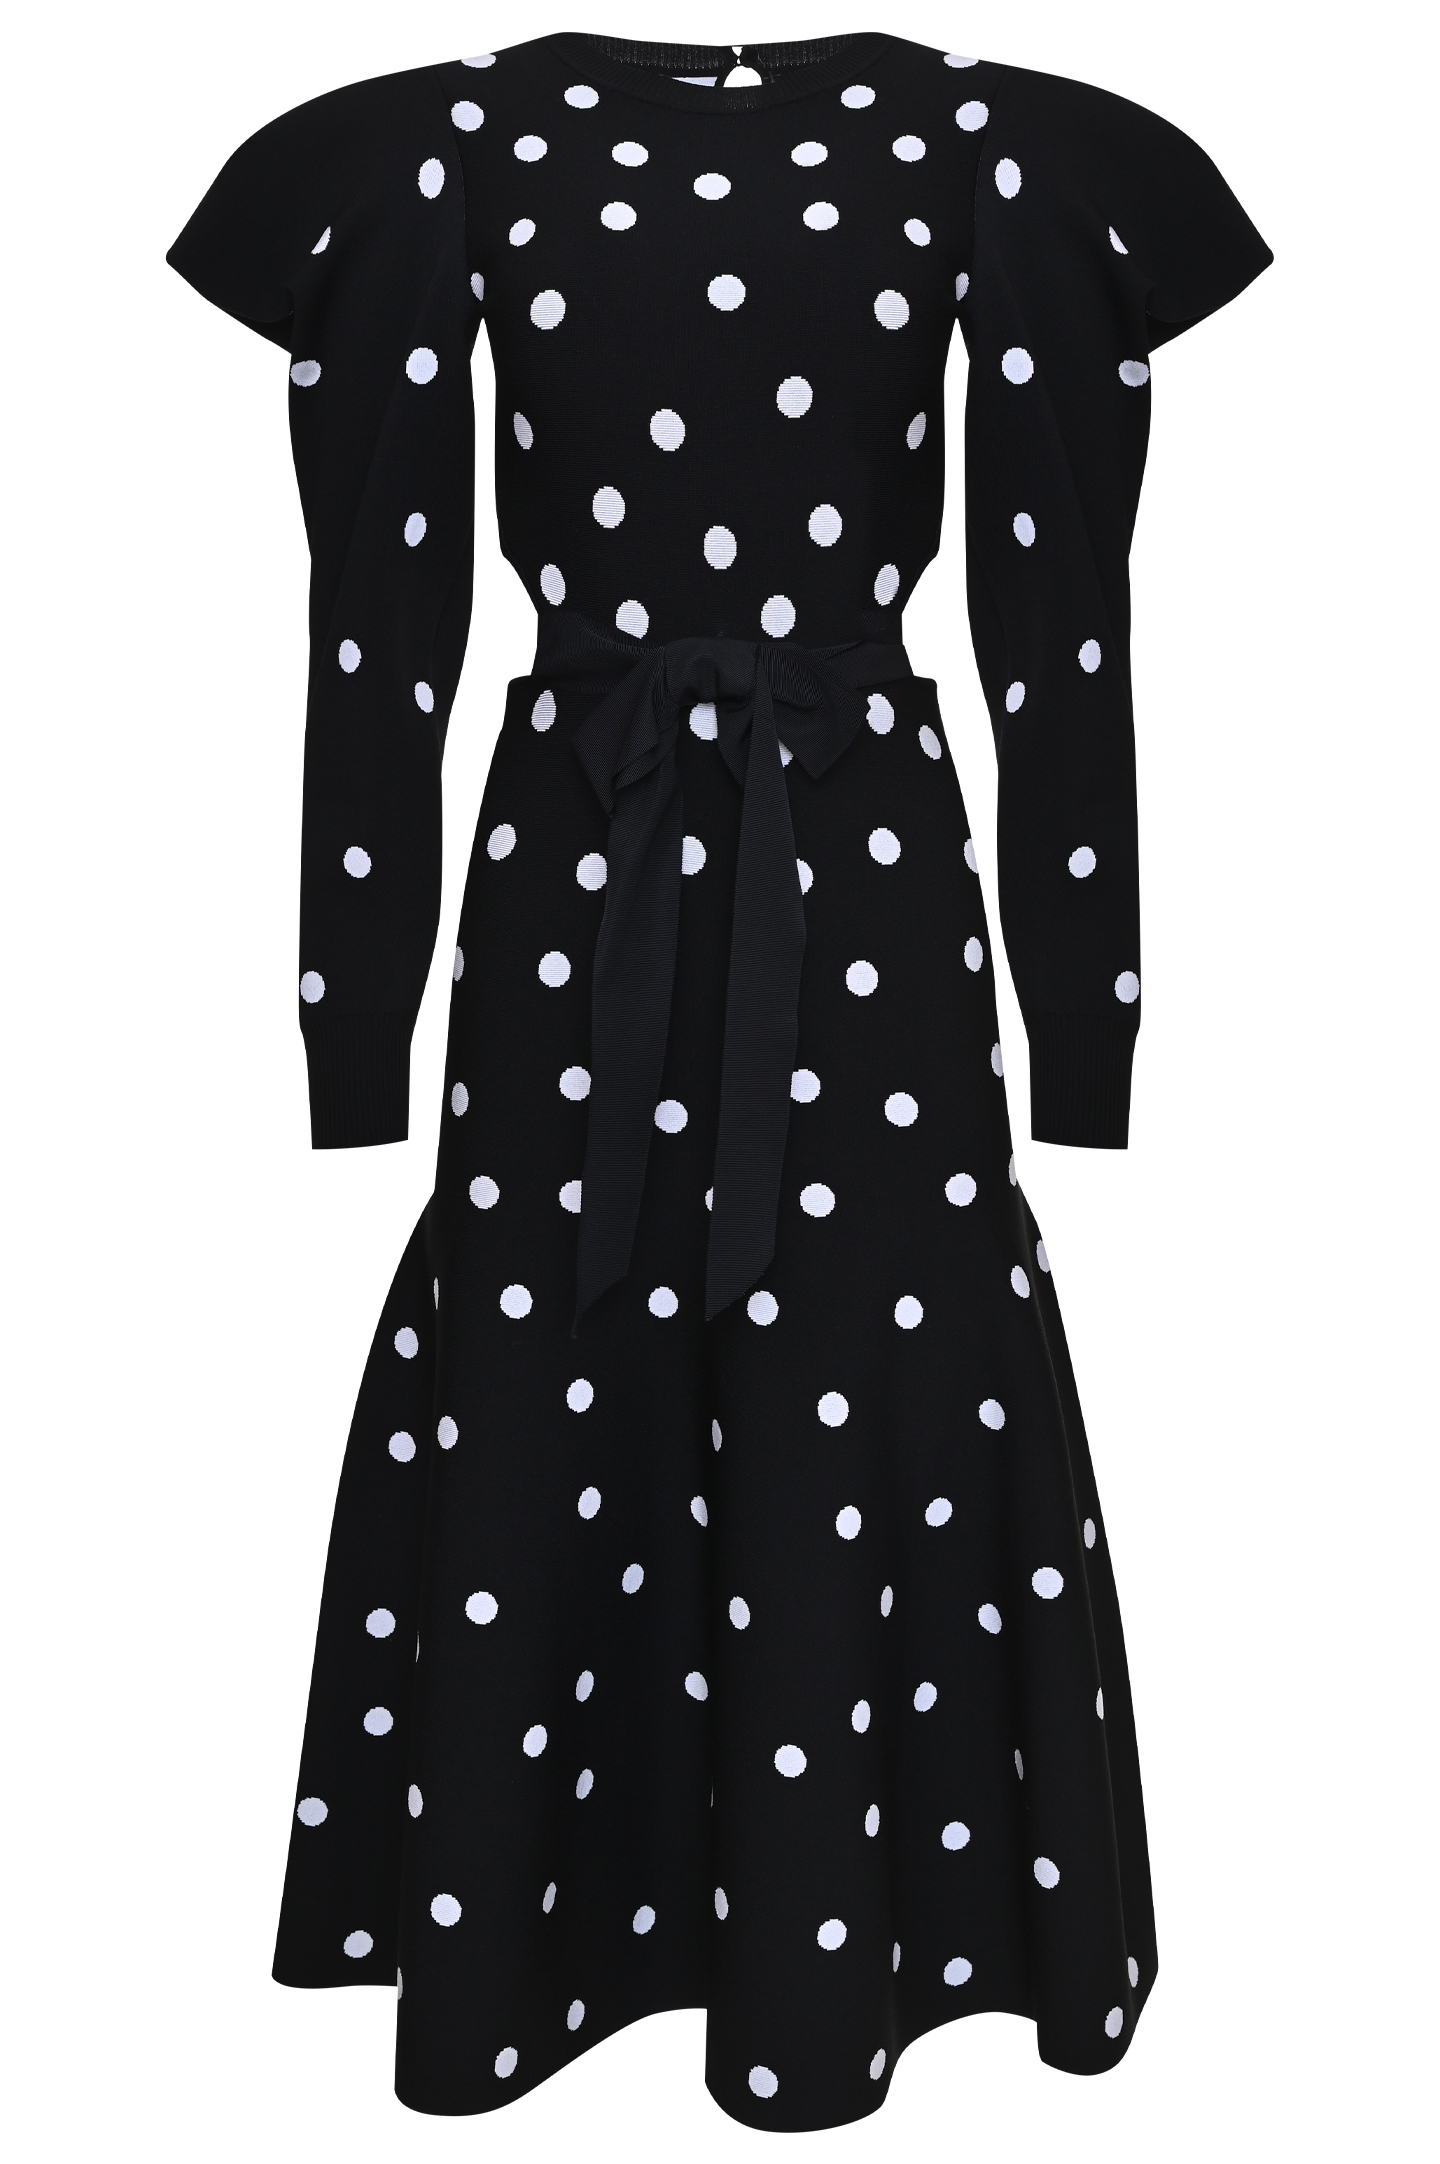 Платье CAROLINA HERRERA S2112N502, цвет: Черно-белый, Женский